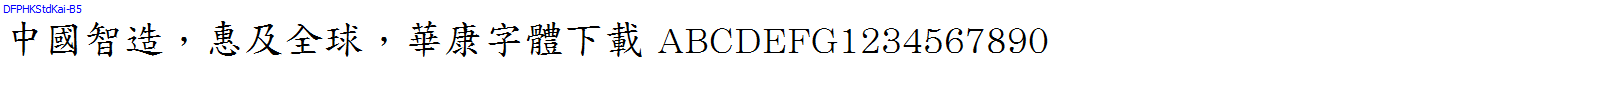 華康字體DFPHKStdKai-B5.TTF